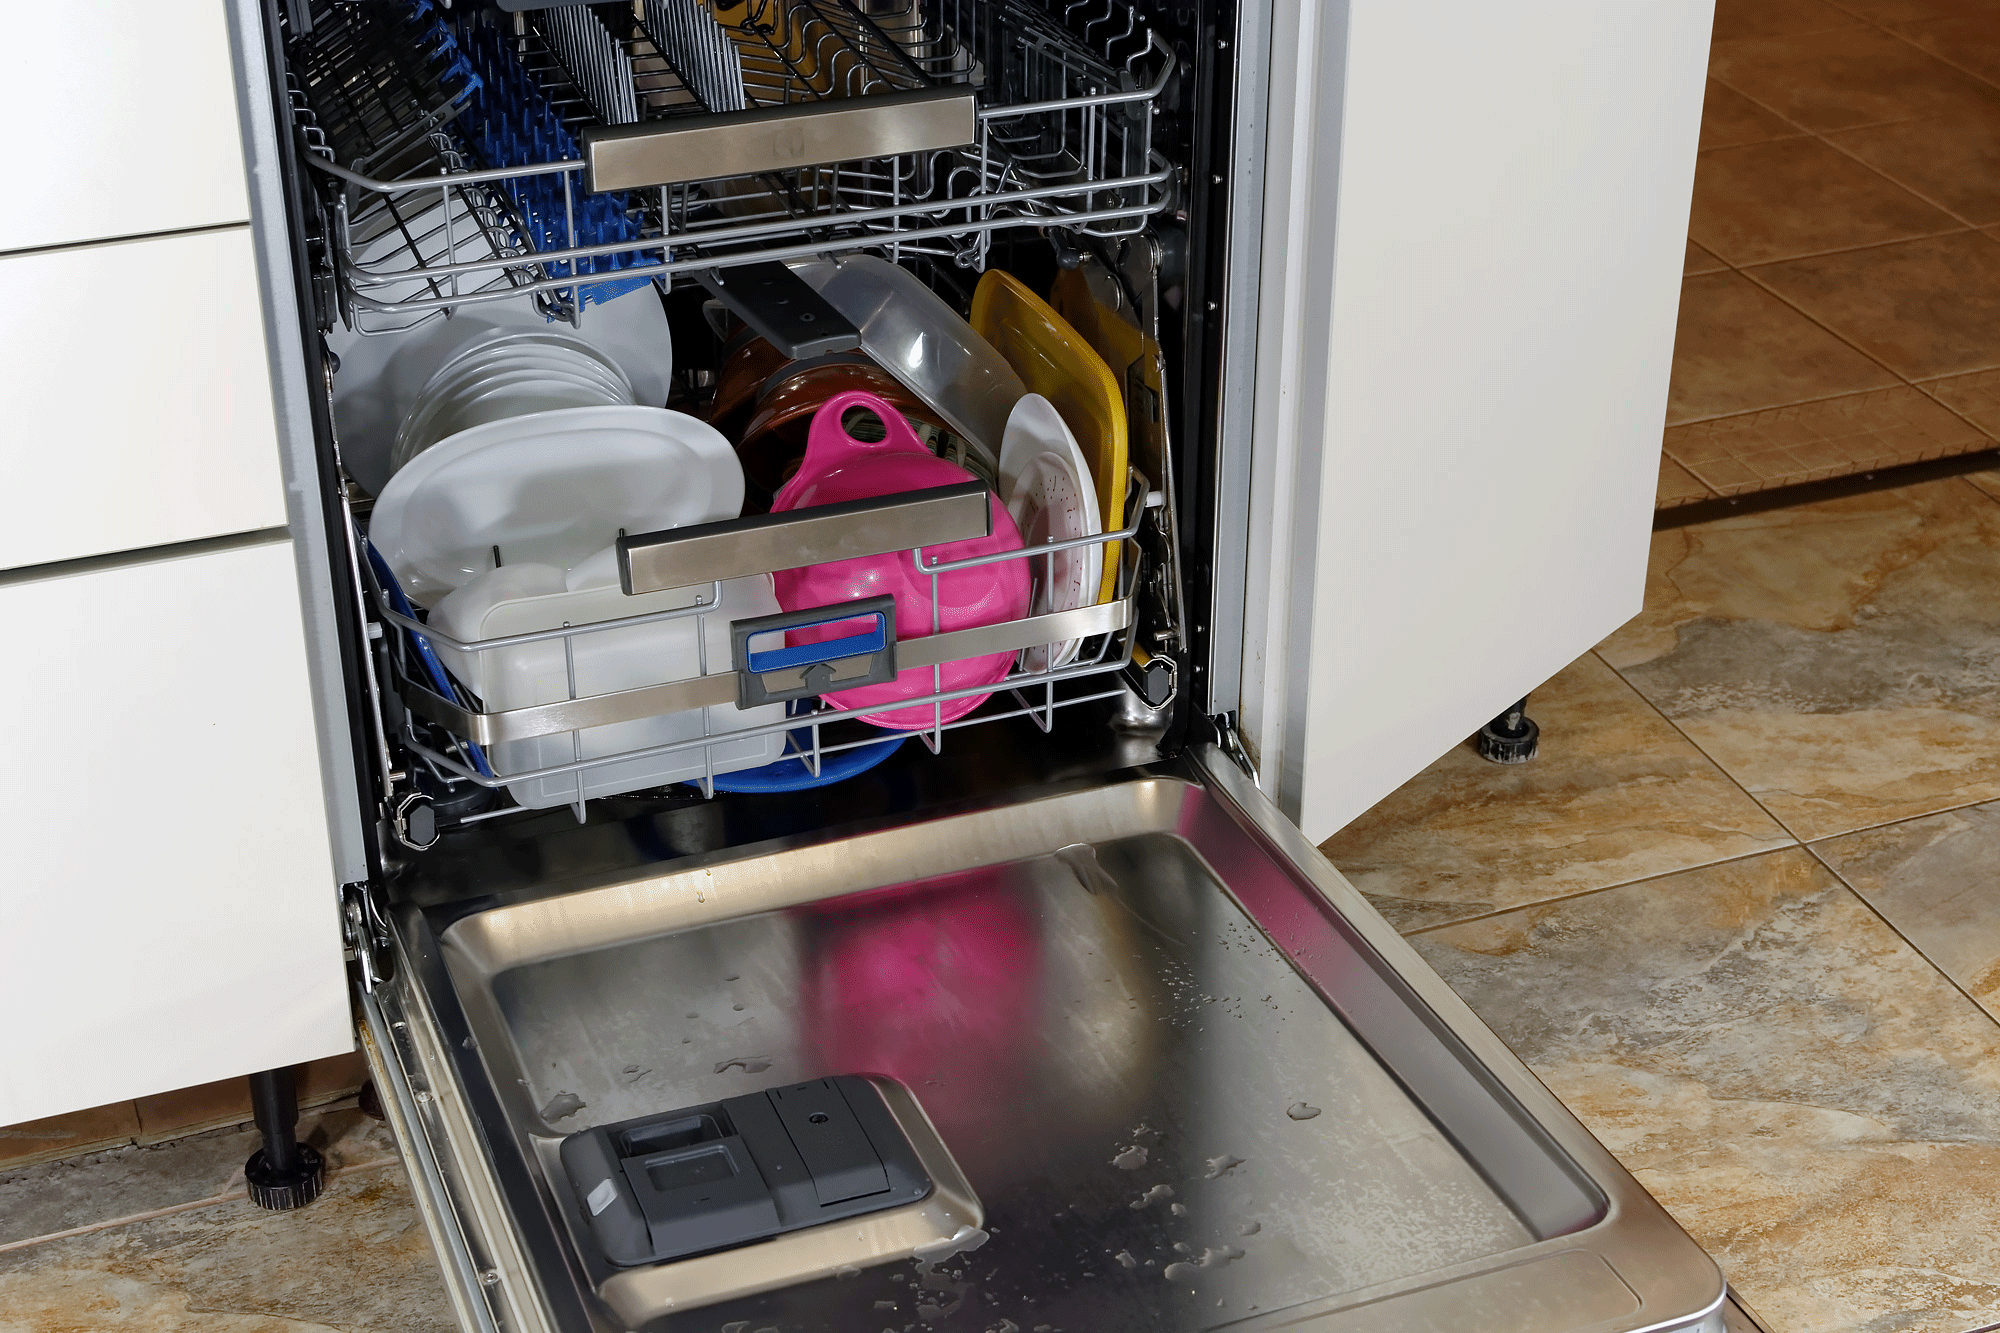 Comfort Lift посудомоечная машина Electrolux. Electrolux esl4550ro. Electrolux ESL 6380 ro. Загрузка посудомоечной машины Электролюкс. Первый пуск посудомоечной машины